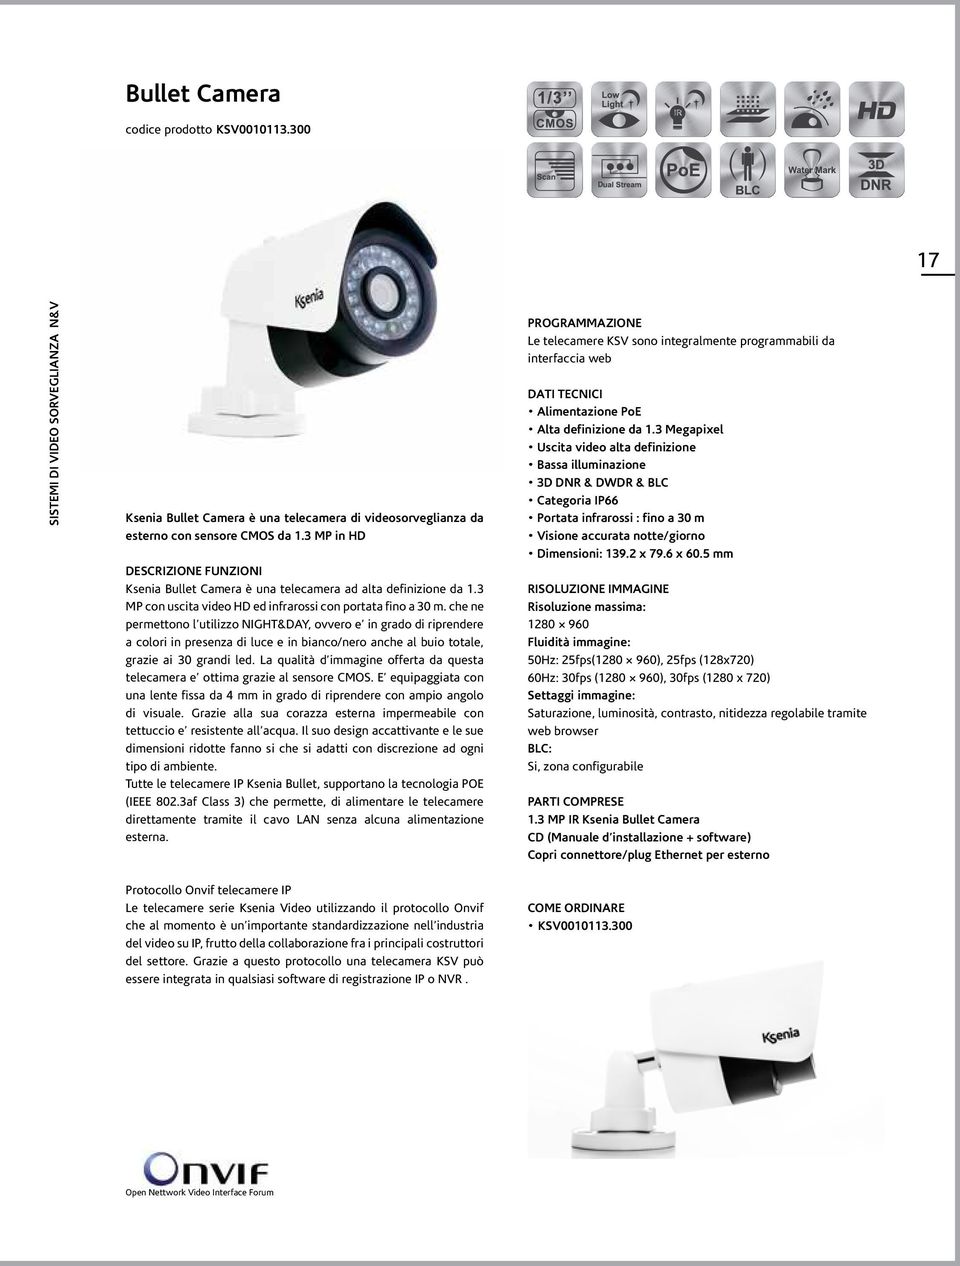 sensore CMOS da 1.3 MP in HD DESCRIZIONE FUNZIONI Ksenia Bullet Camera è una telecamera ad alta definizione da 1.3 MP con uscita video HD ed infrarossi con portata fino a 30 m.